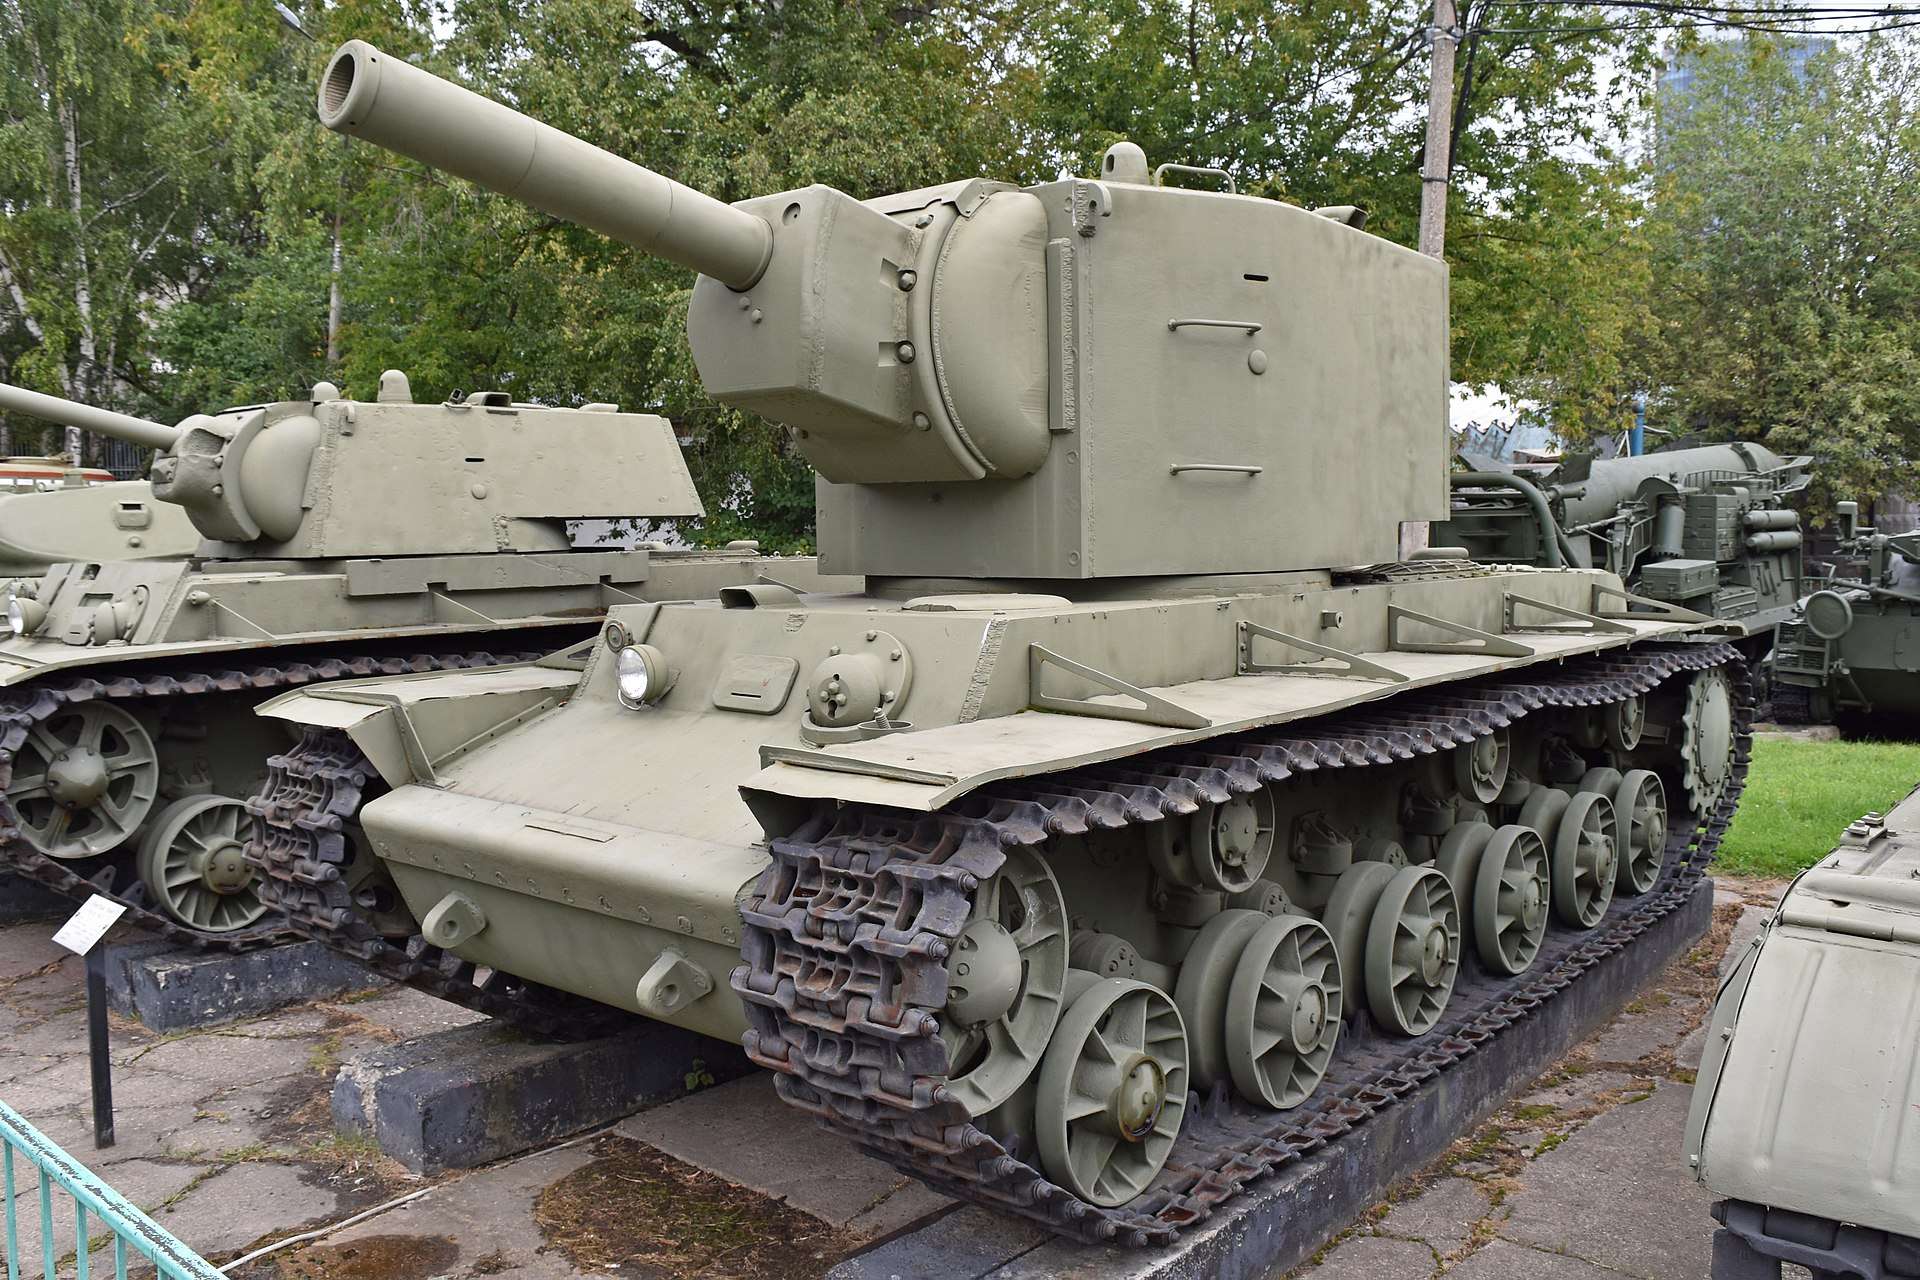 The KV-2 heavy tank.